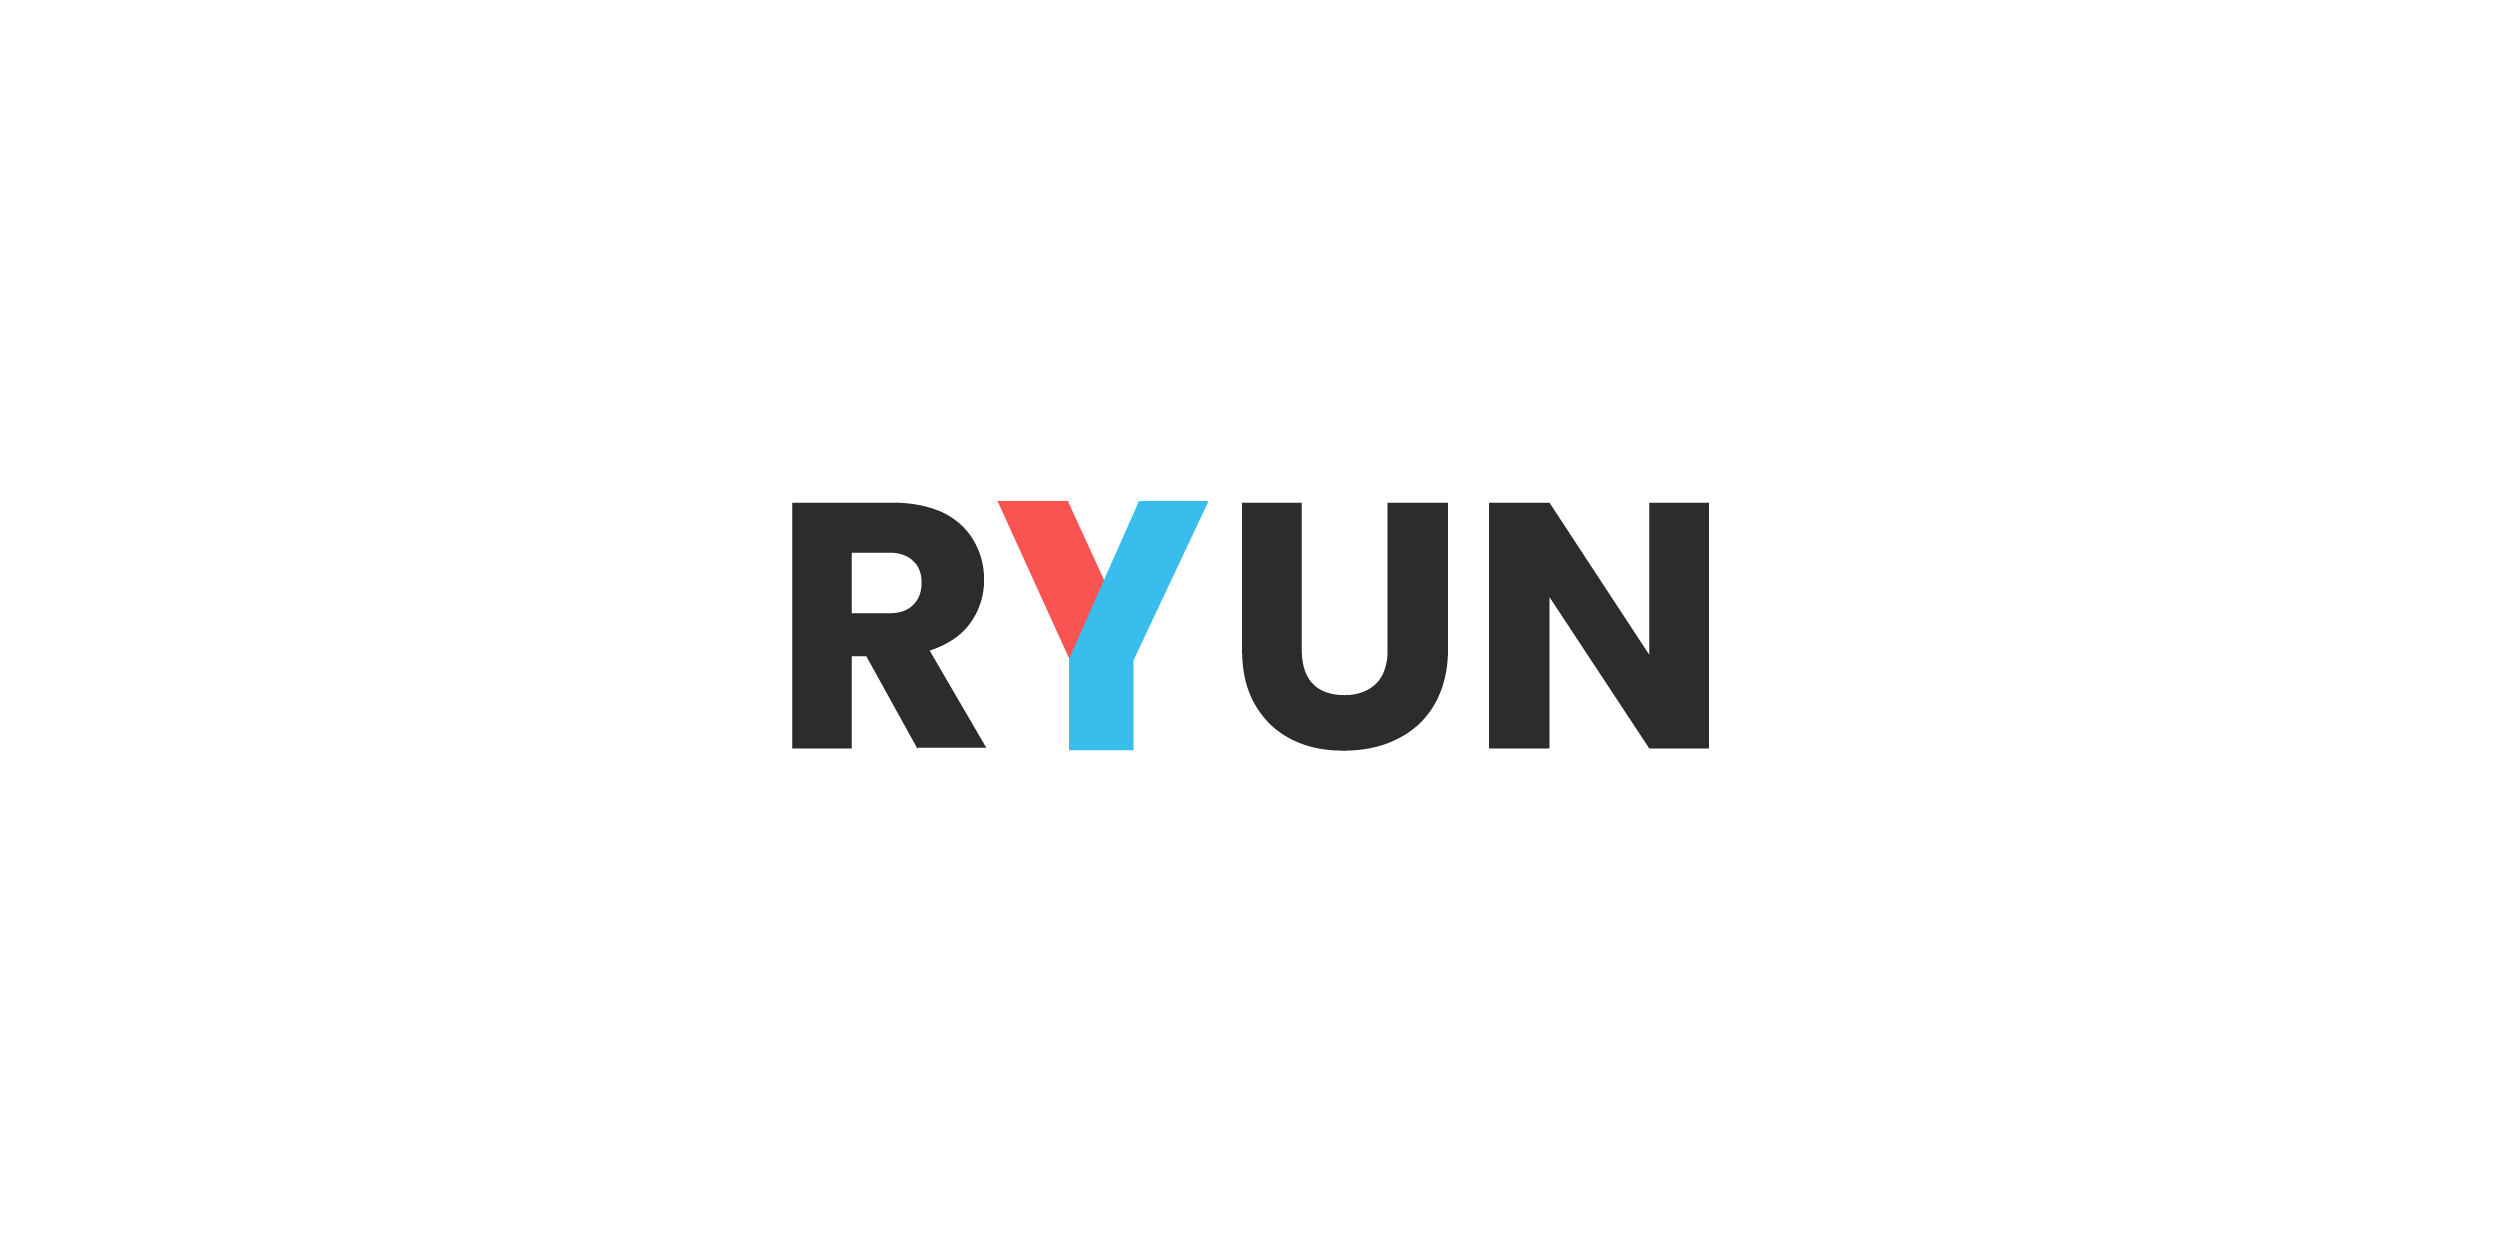 YAS product logo_RYUN english and logotype